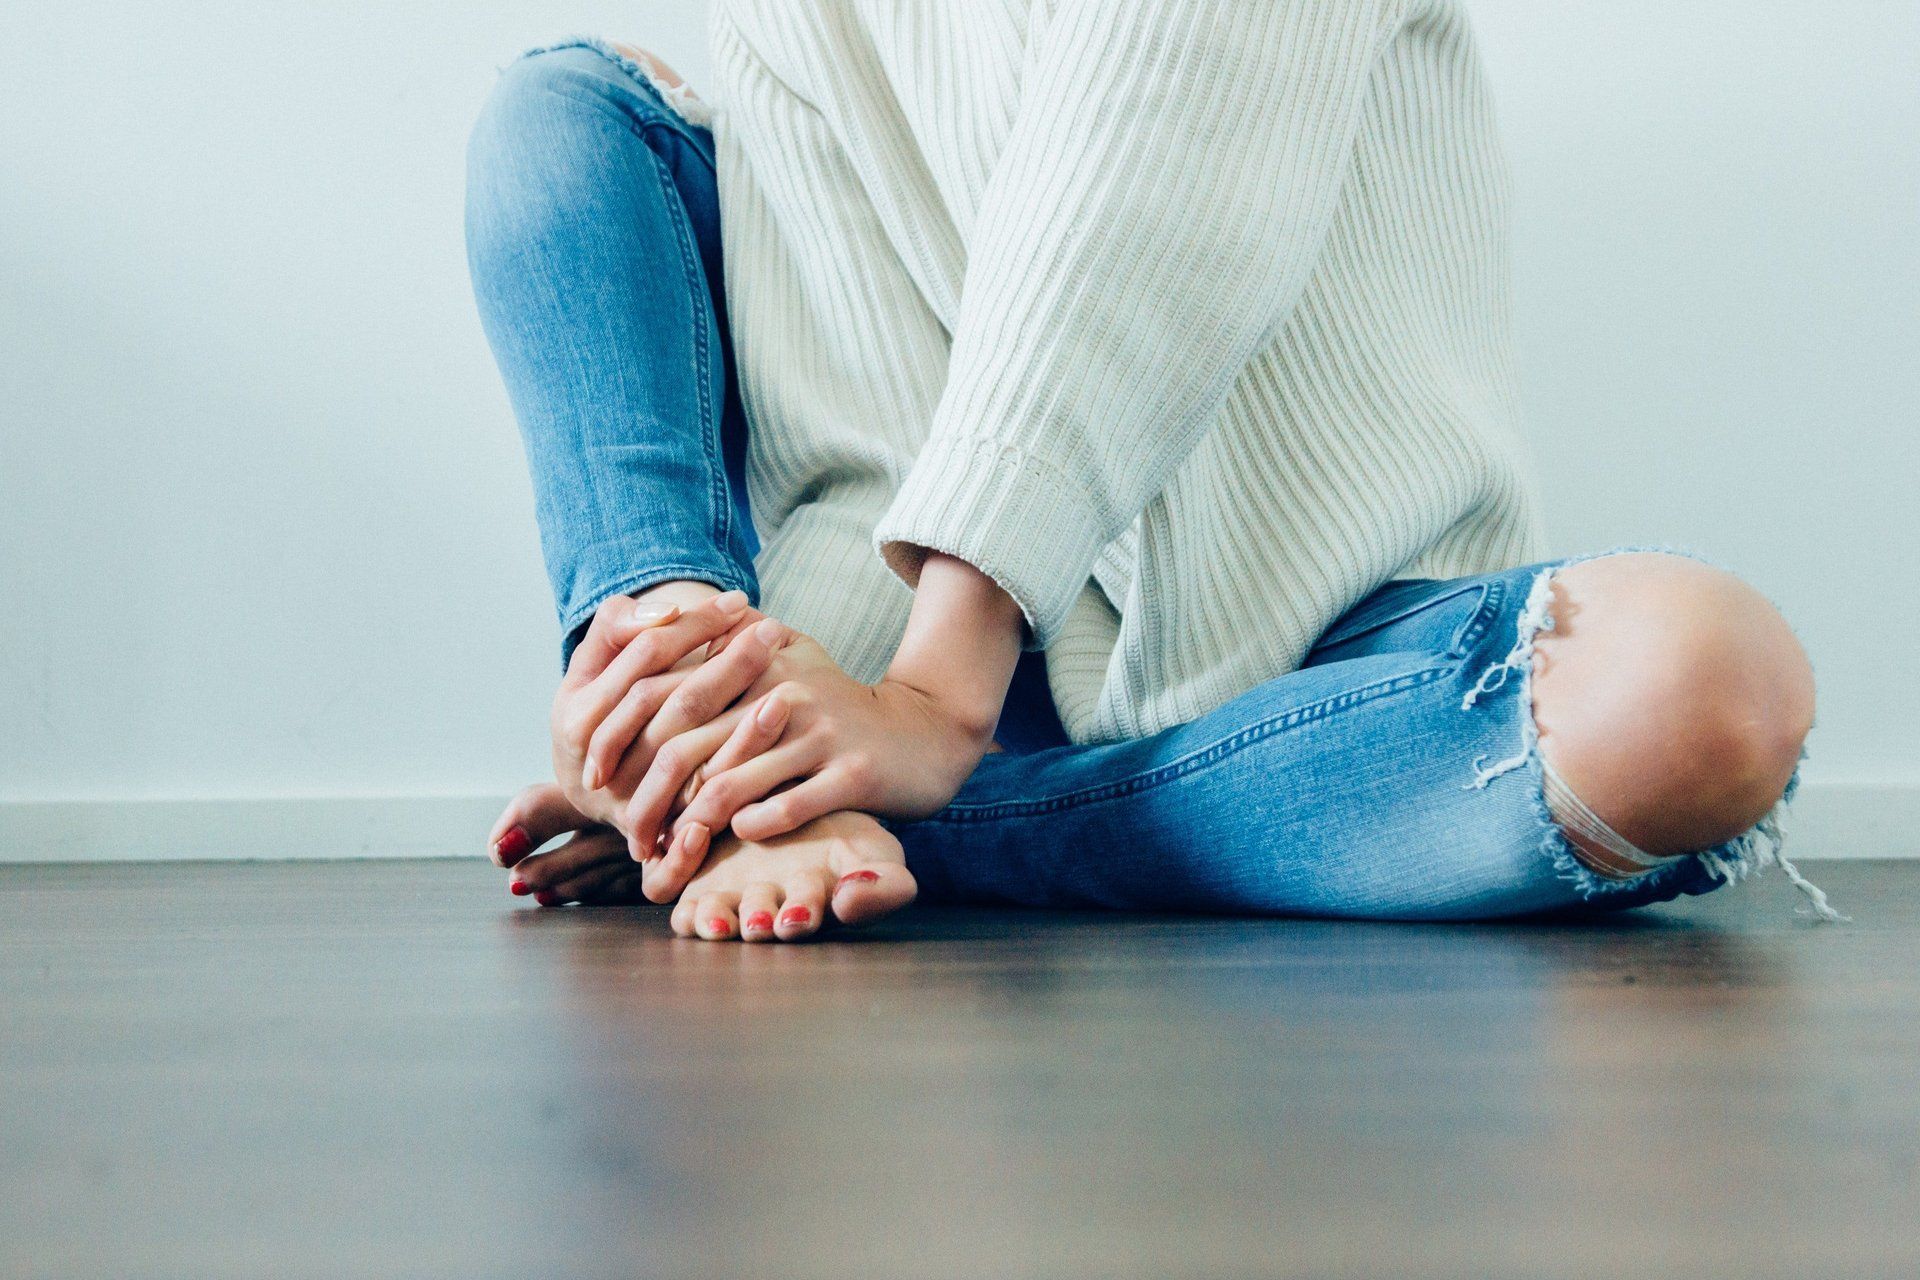 bilde som viser en person som sitter på gulvet, med smerter i foten